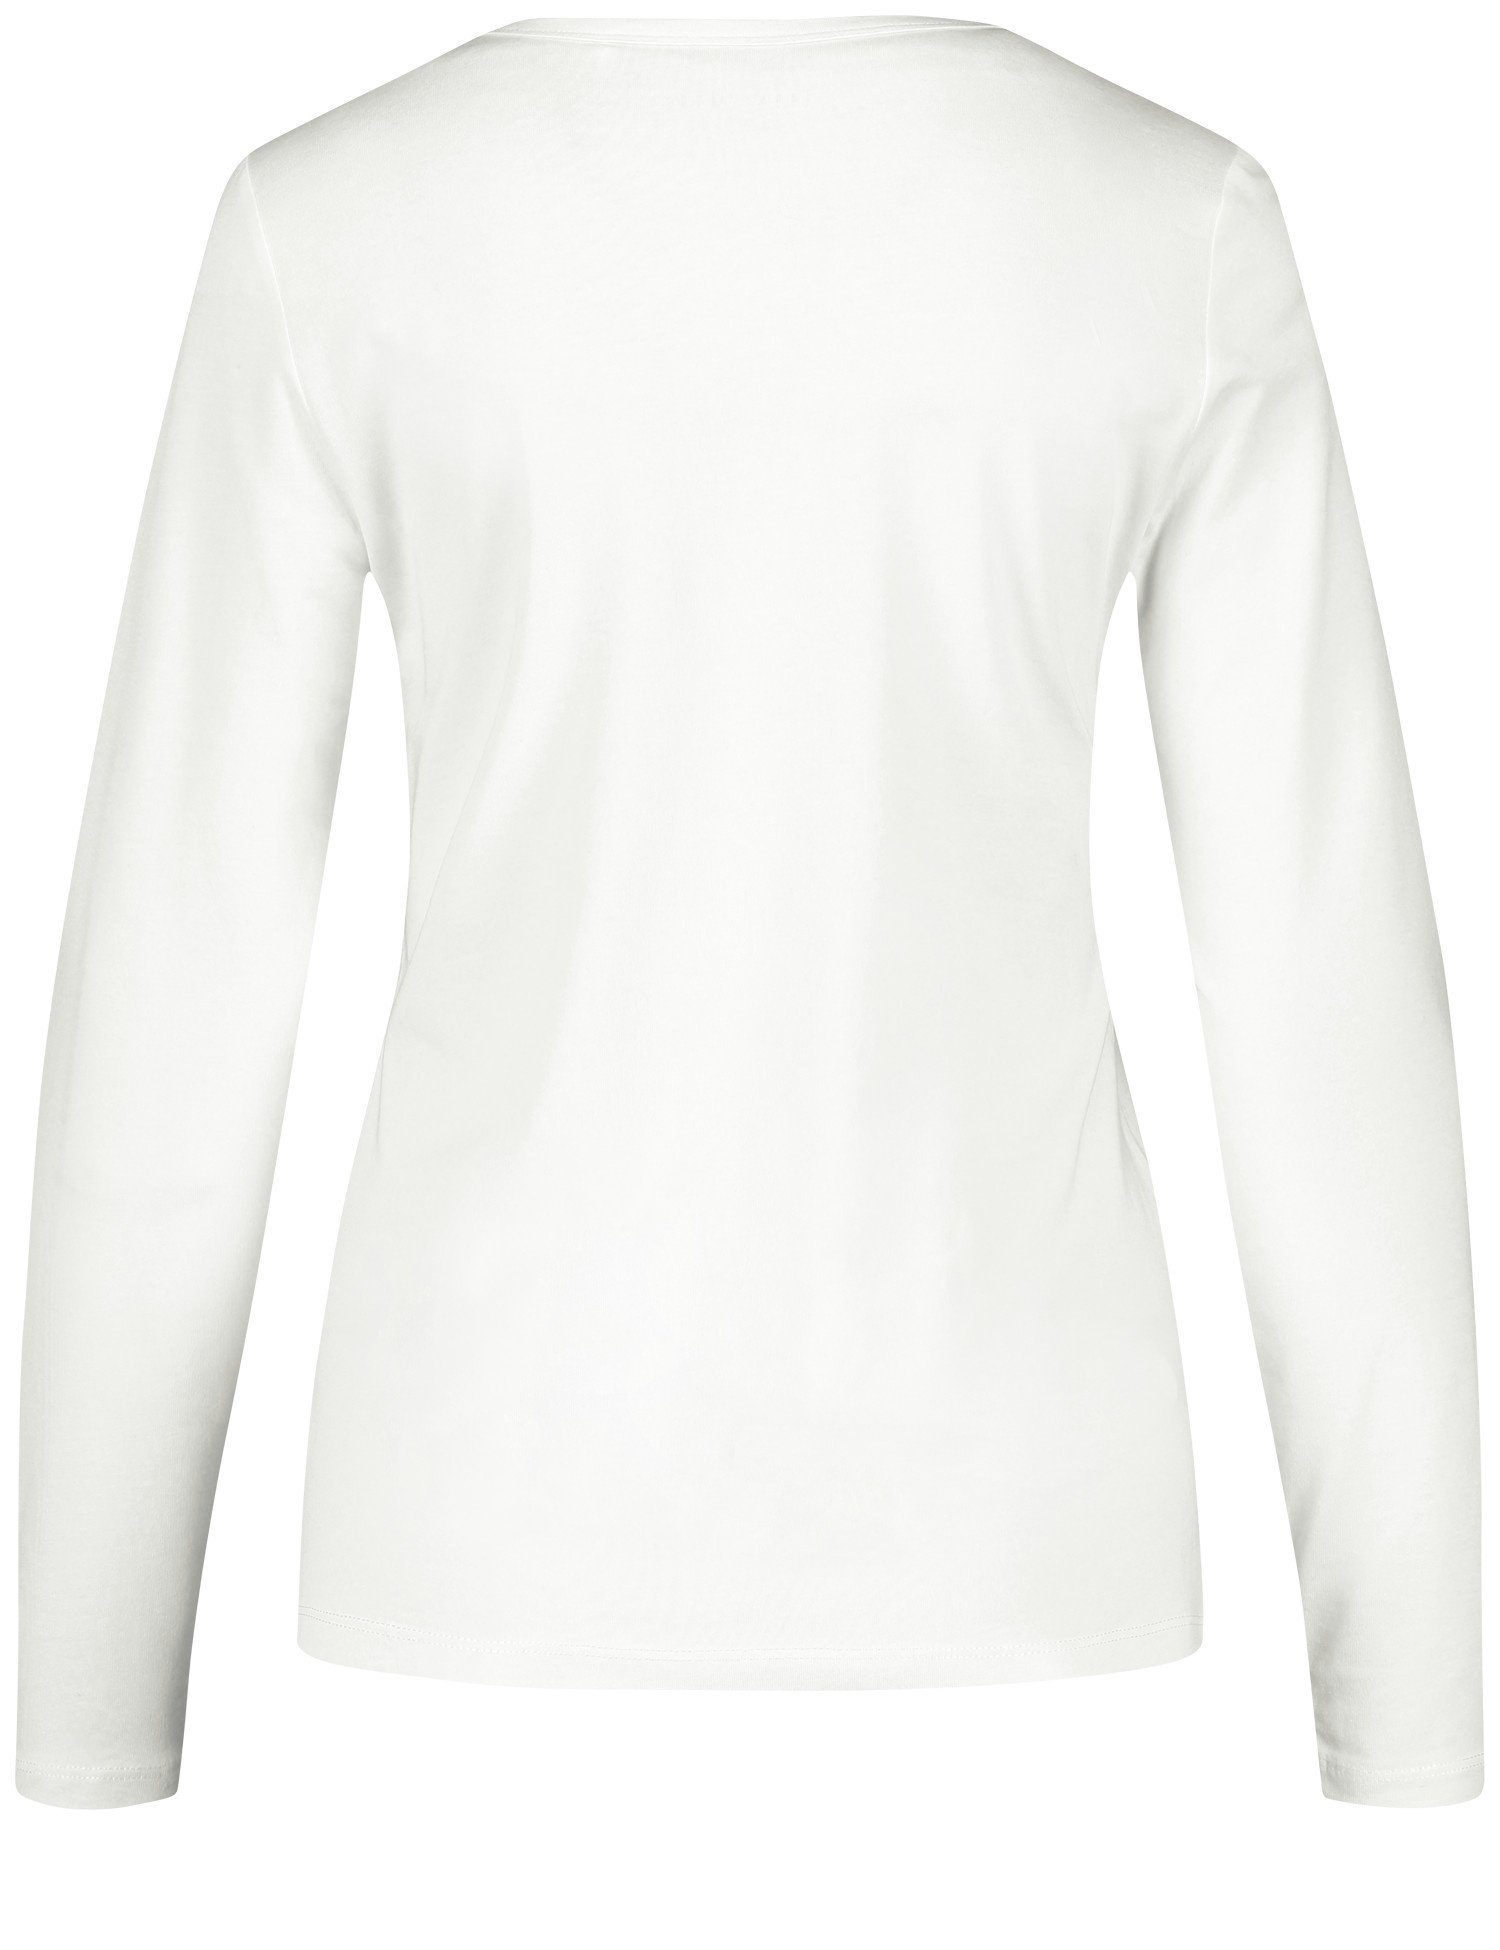 Stretchkomfort WEBER Off-white GERRY mit Langarmshirt Basic Langarmshirt